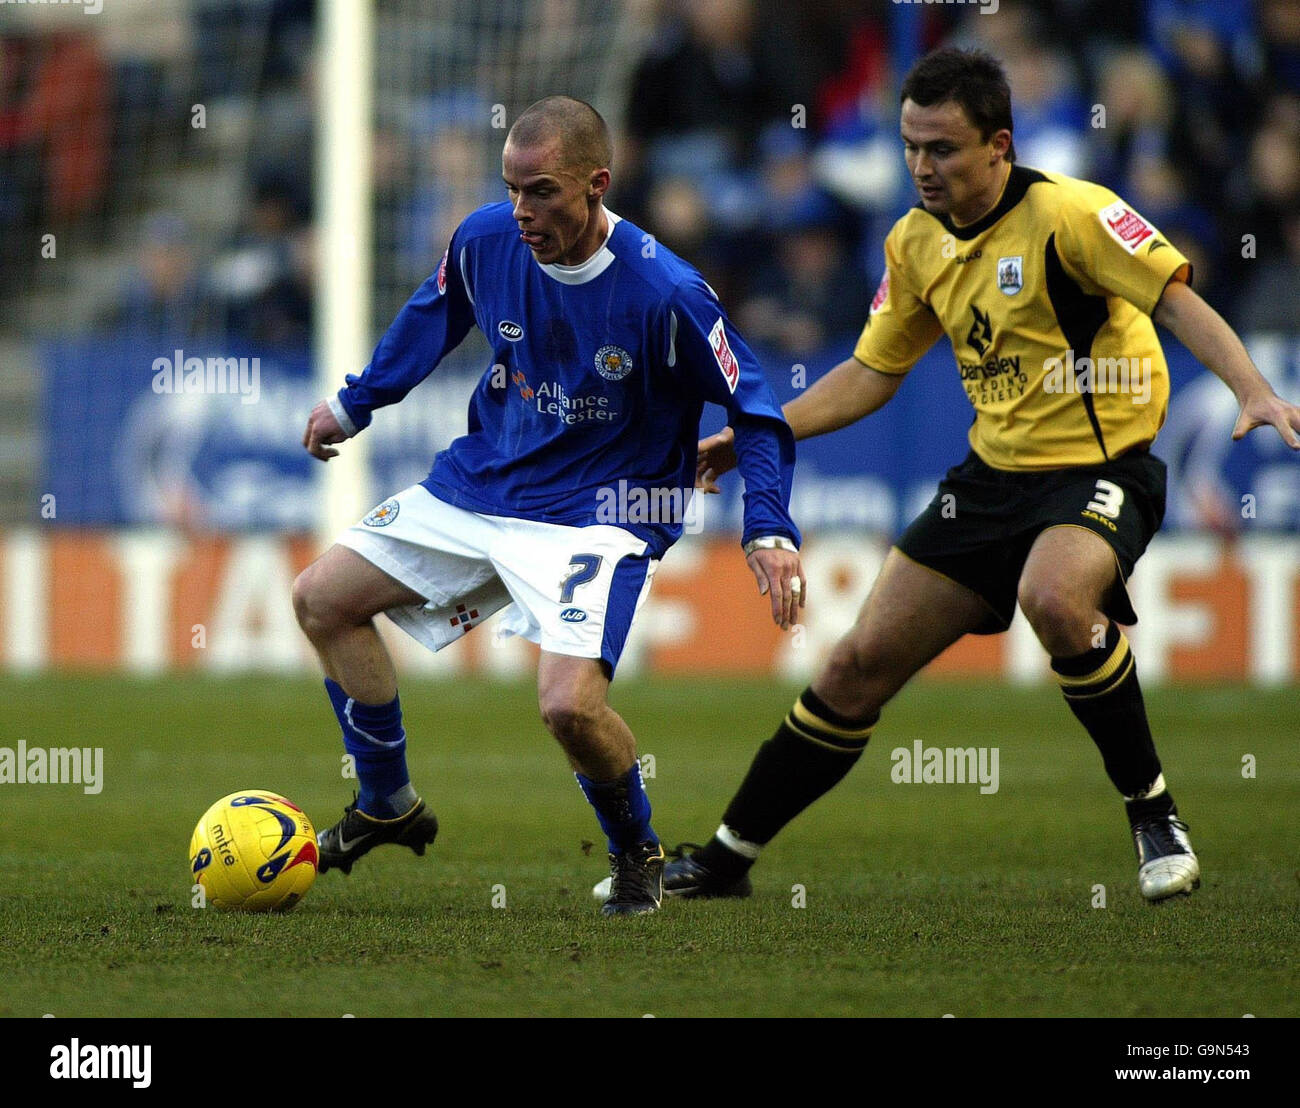 Iain Hulme de Leicester garde le ballon à côté de Paul Heckingbottom de Barnsley lors du match de championnat Coca-Cola au stade Walkers, à Leicester. Banque D'Images